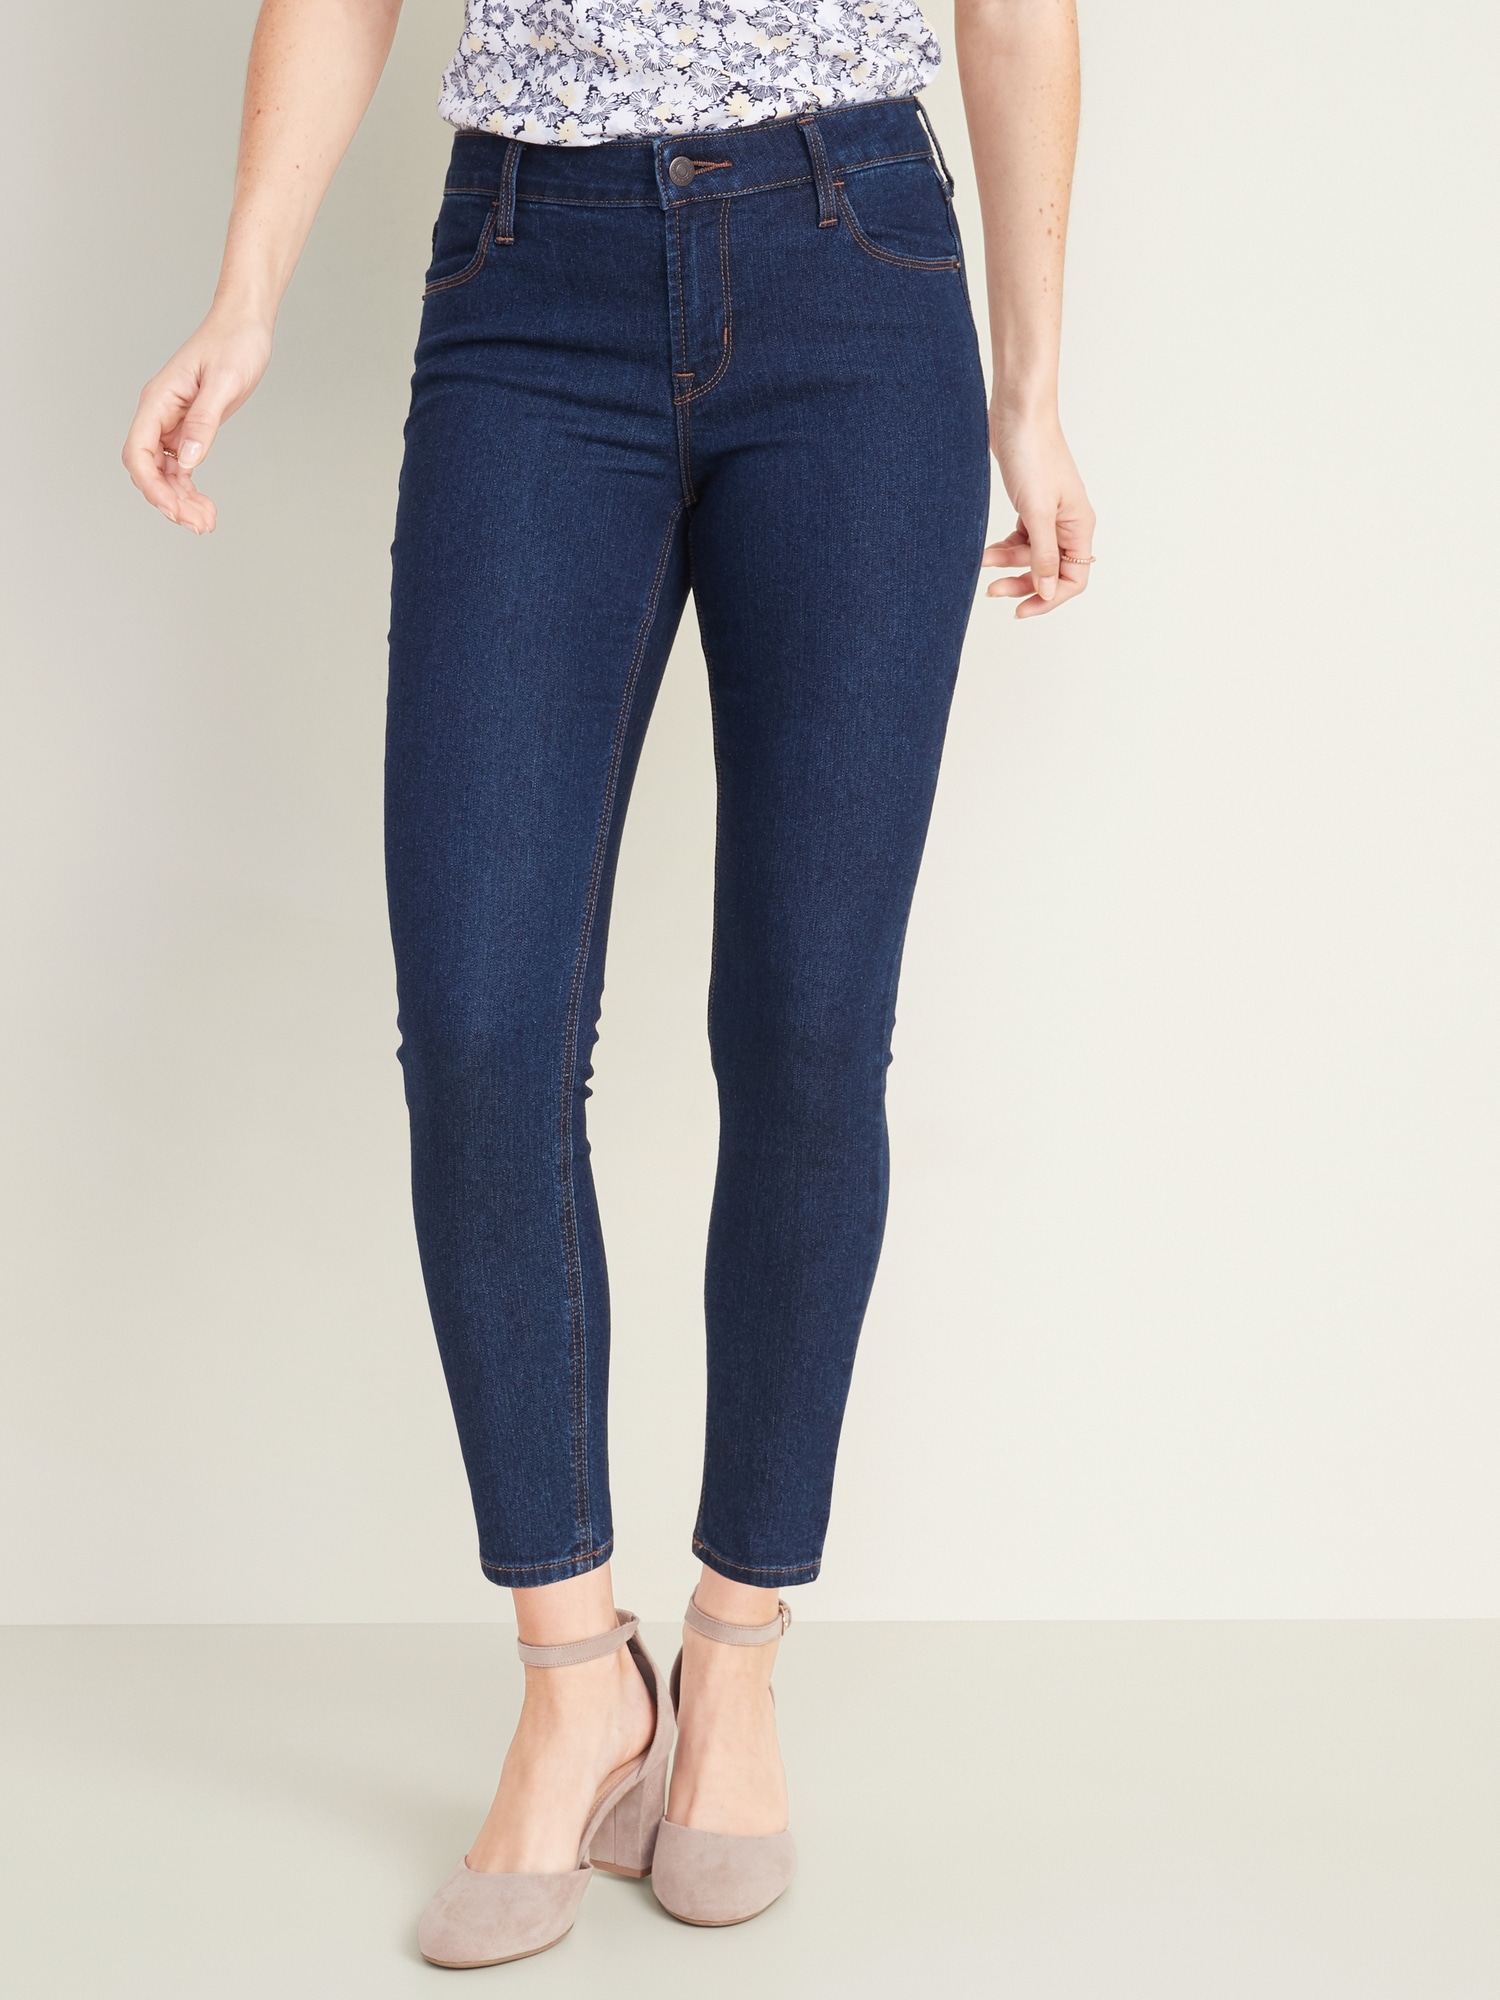 dark blue stretch skinny jeans womens